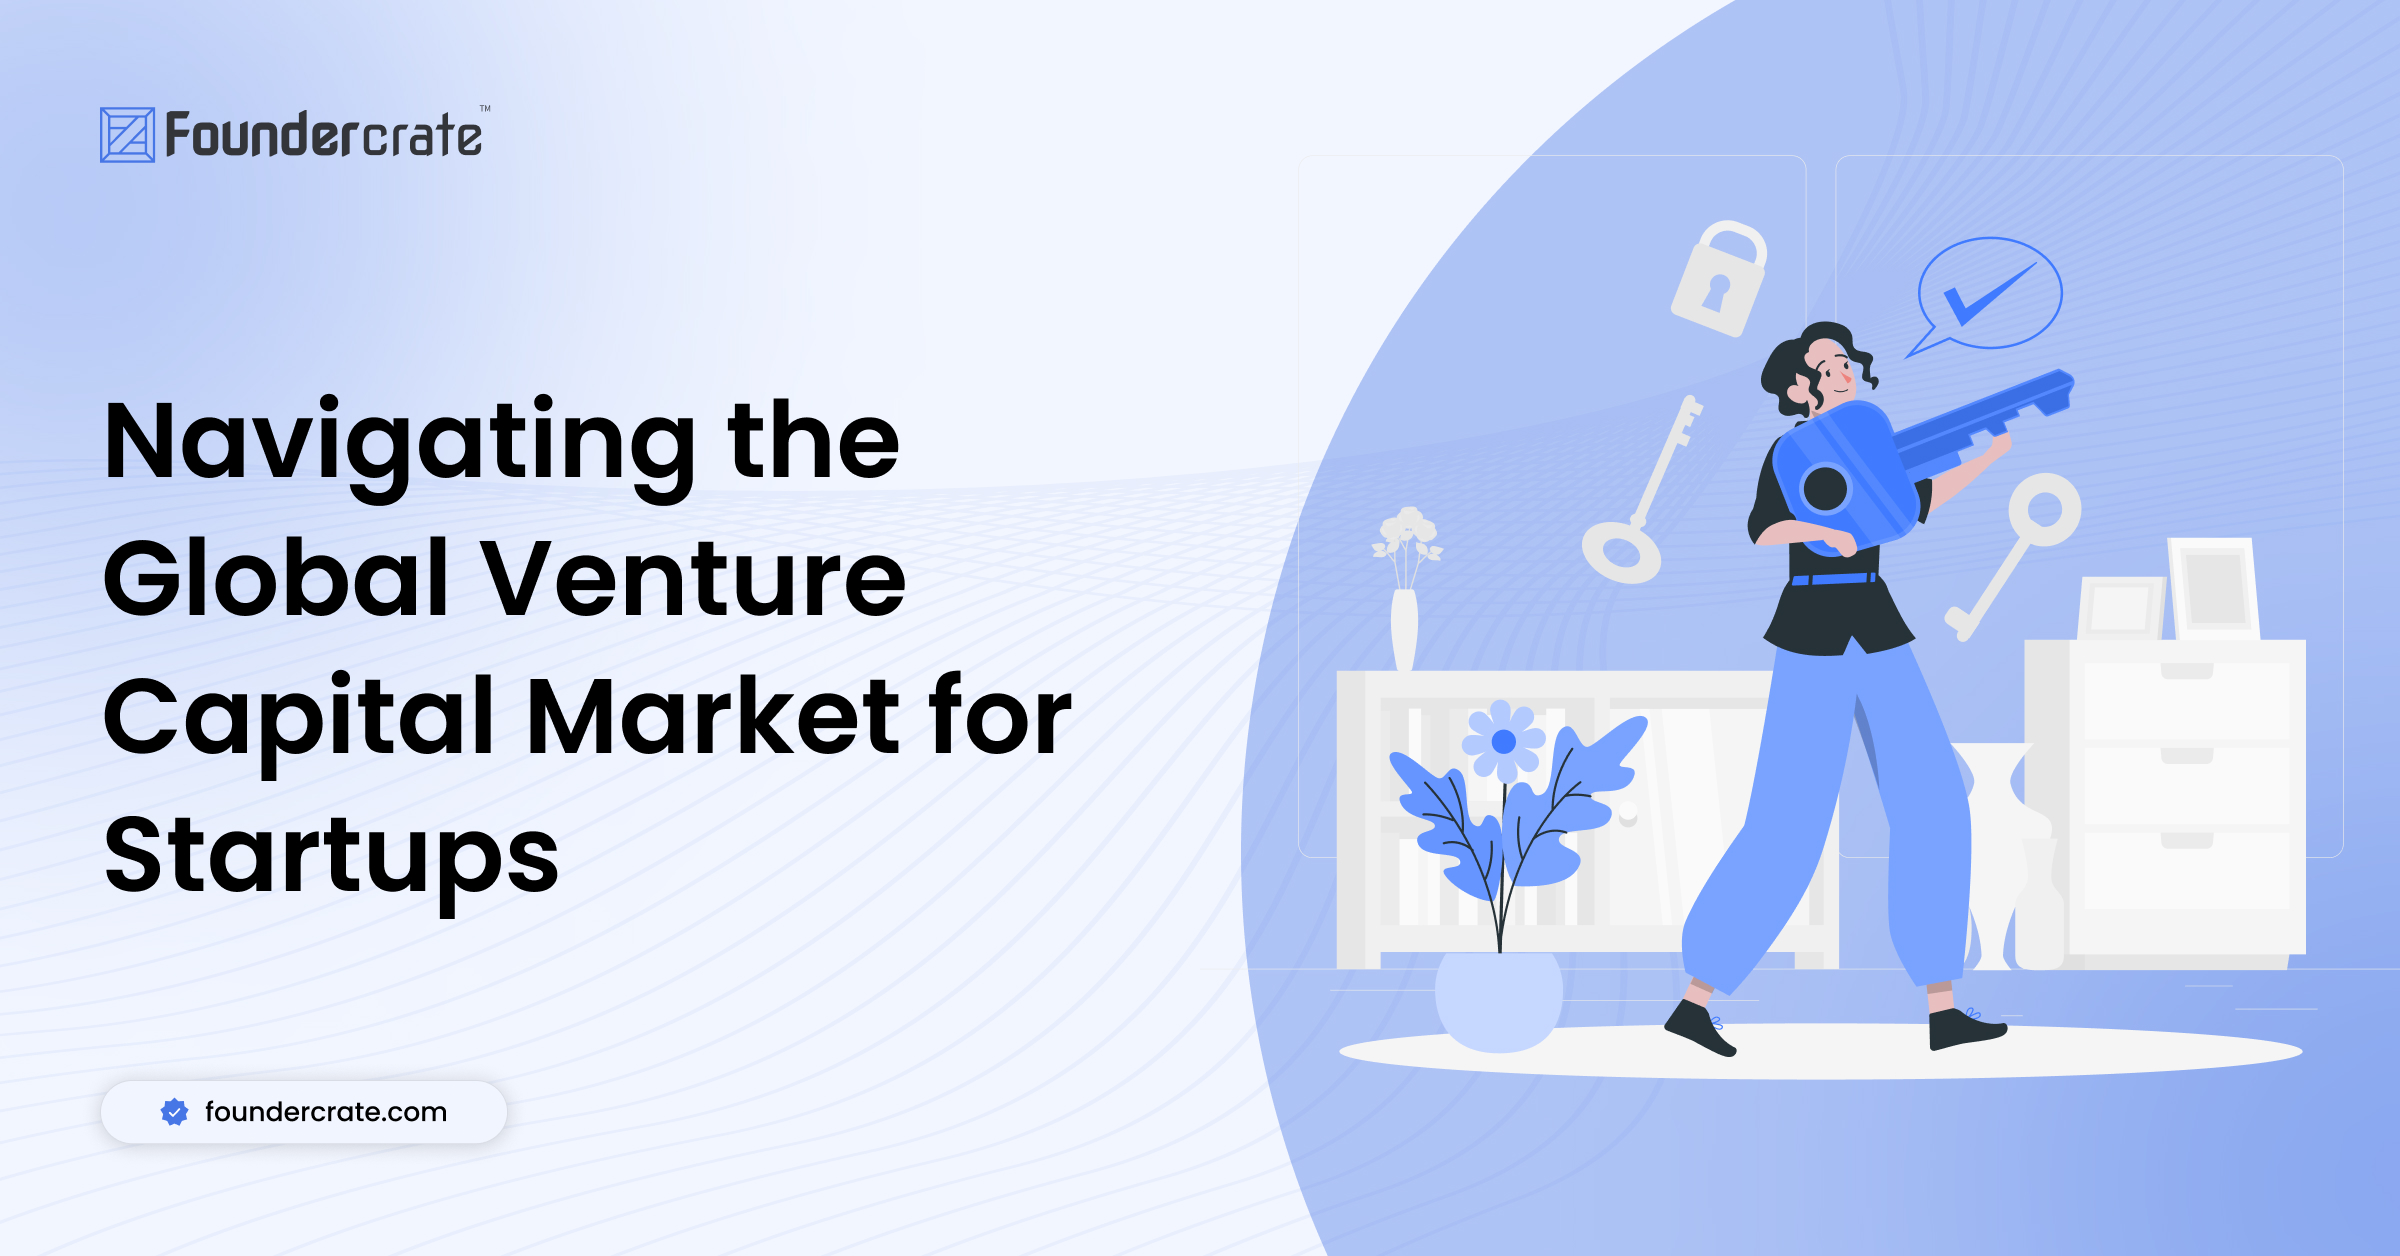 Navigating the Global Venture Capital Market for Startups